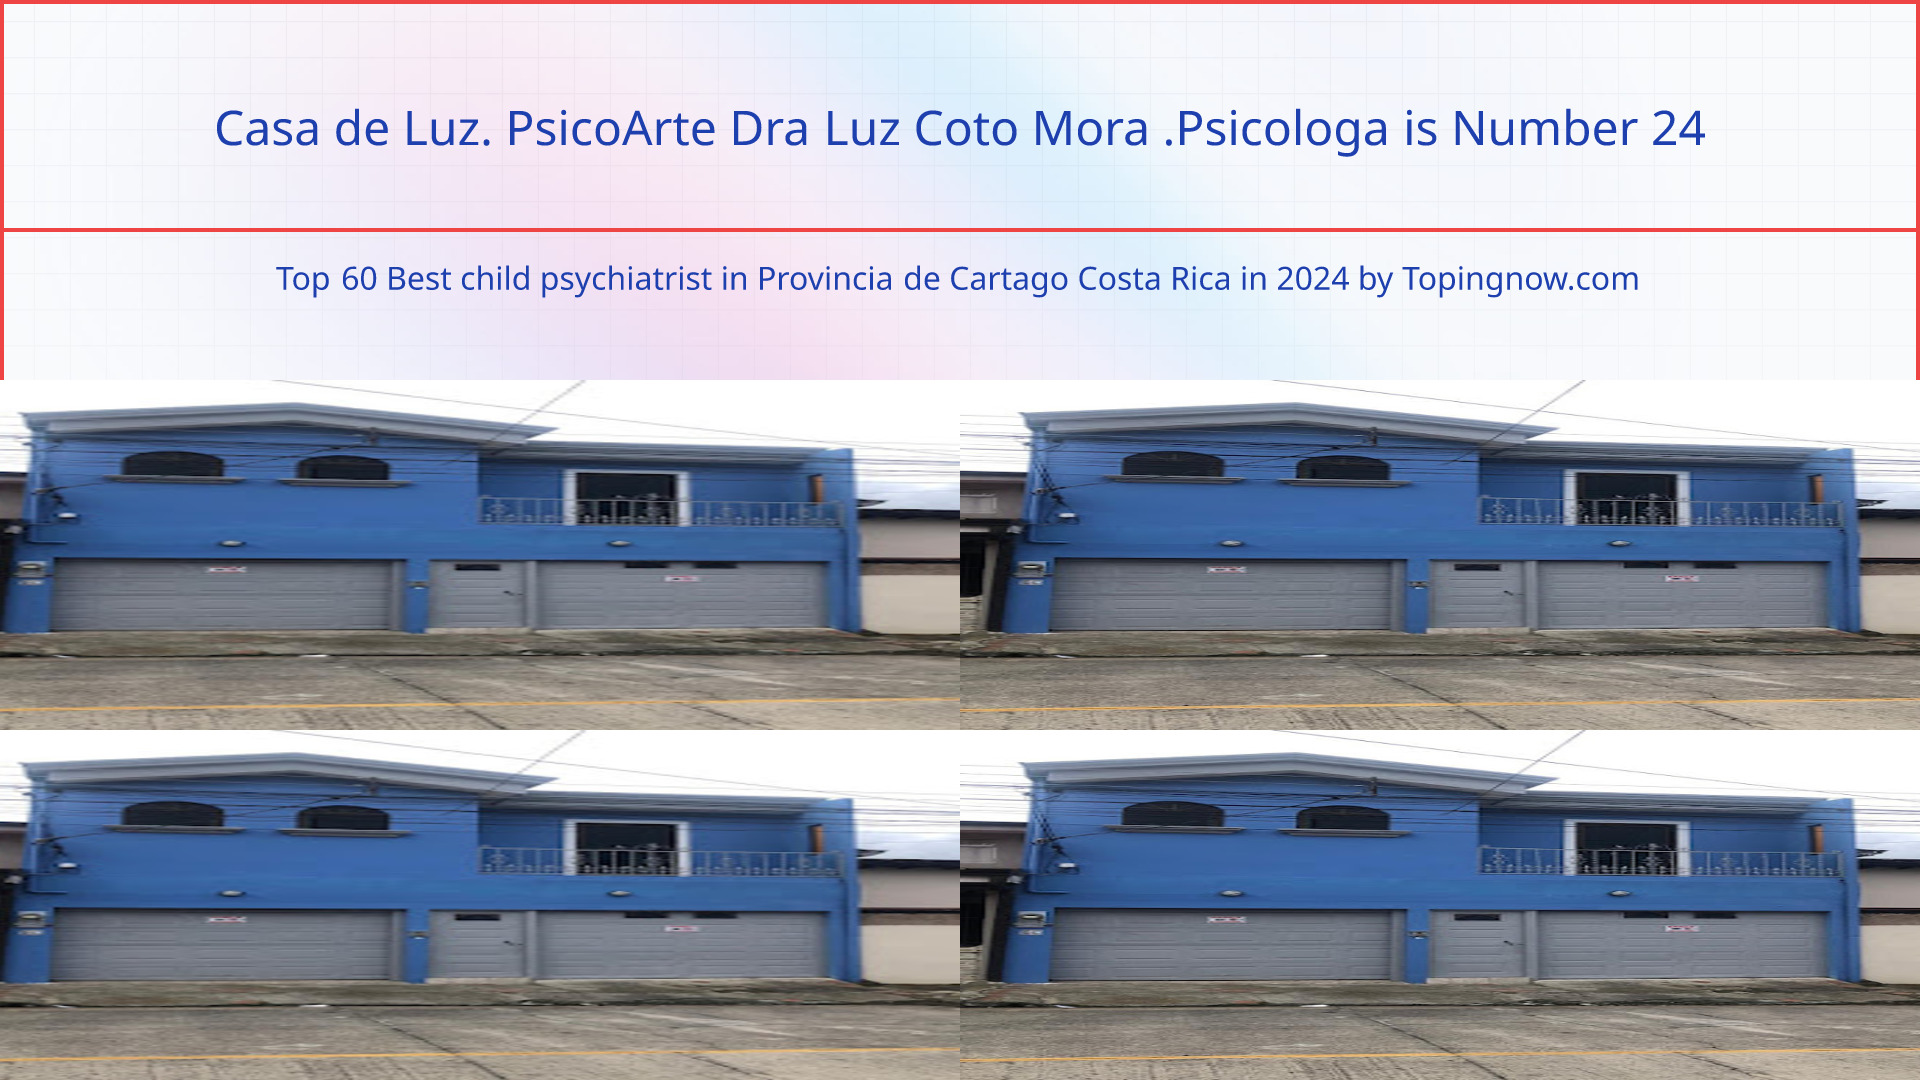 Casa de Luz. PsicoArte Dra Luz Coto Mora .Psicologa: Top 60 Best child psychiatrist in Provincia de Cartago Costa Rica in 2024